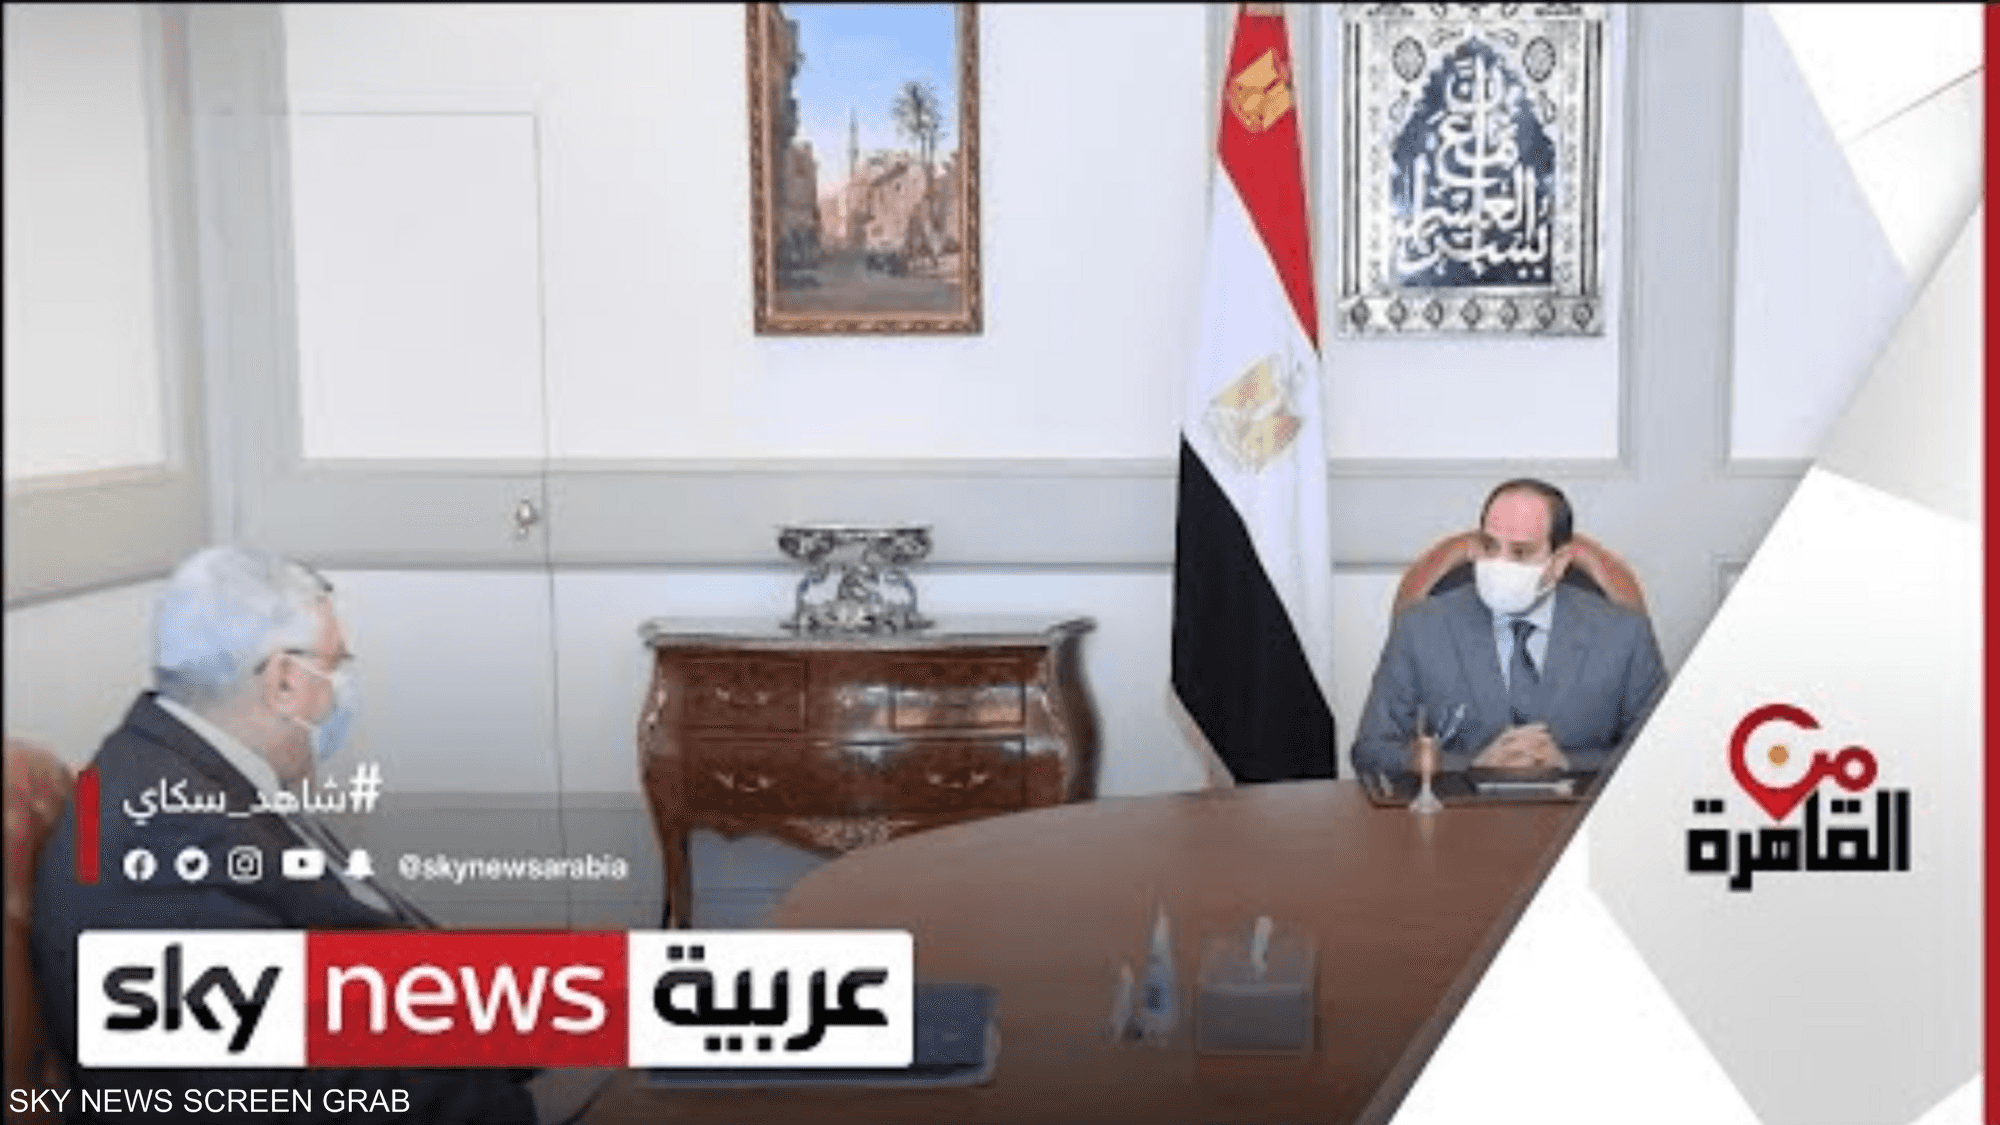 توجيهات رئاسية تلبي احتياجات قطاع التعليم في مصر